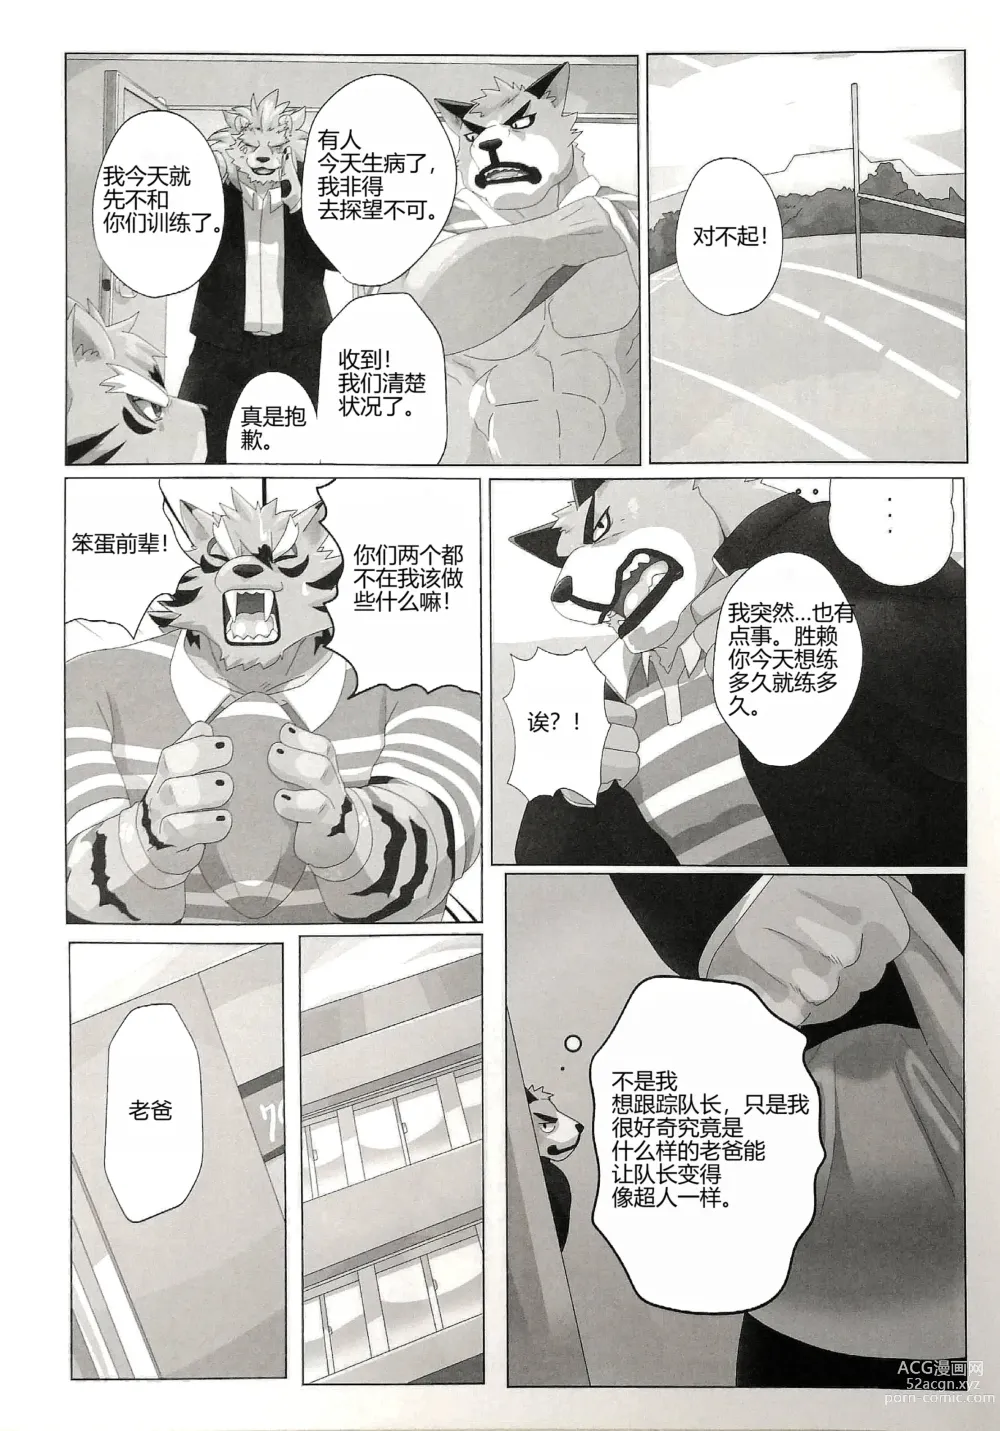 Page 10 of manga 我的父亲!